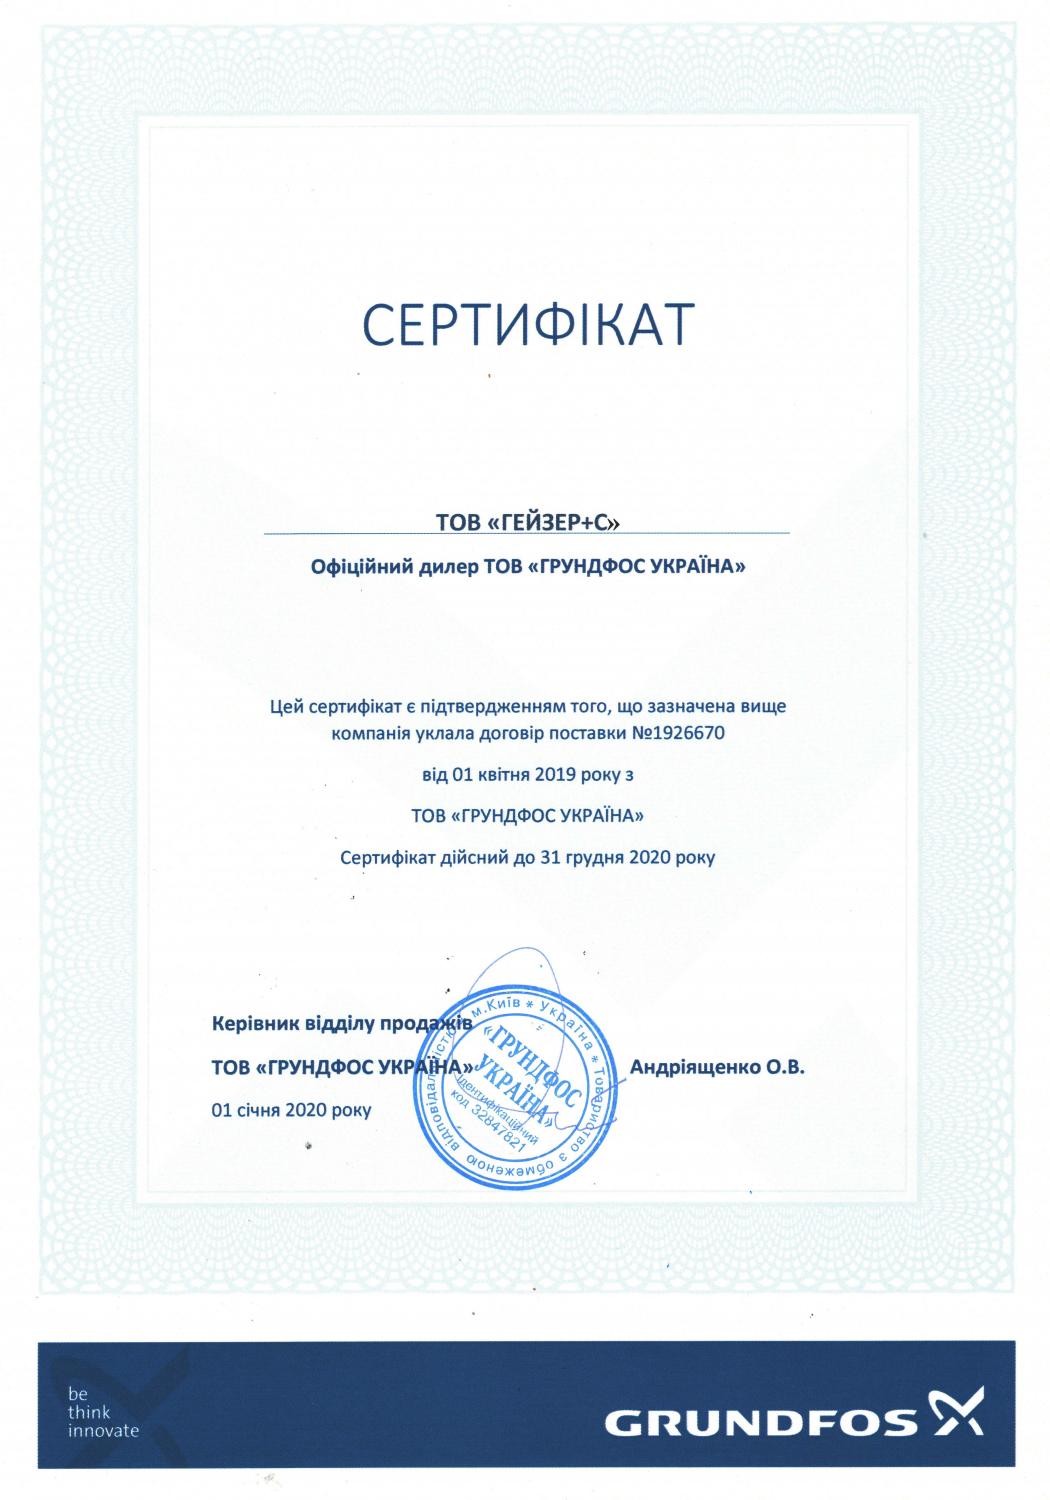 Сертифікат офіційного дилера Grundfos 